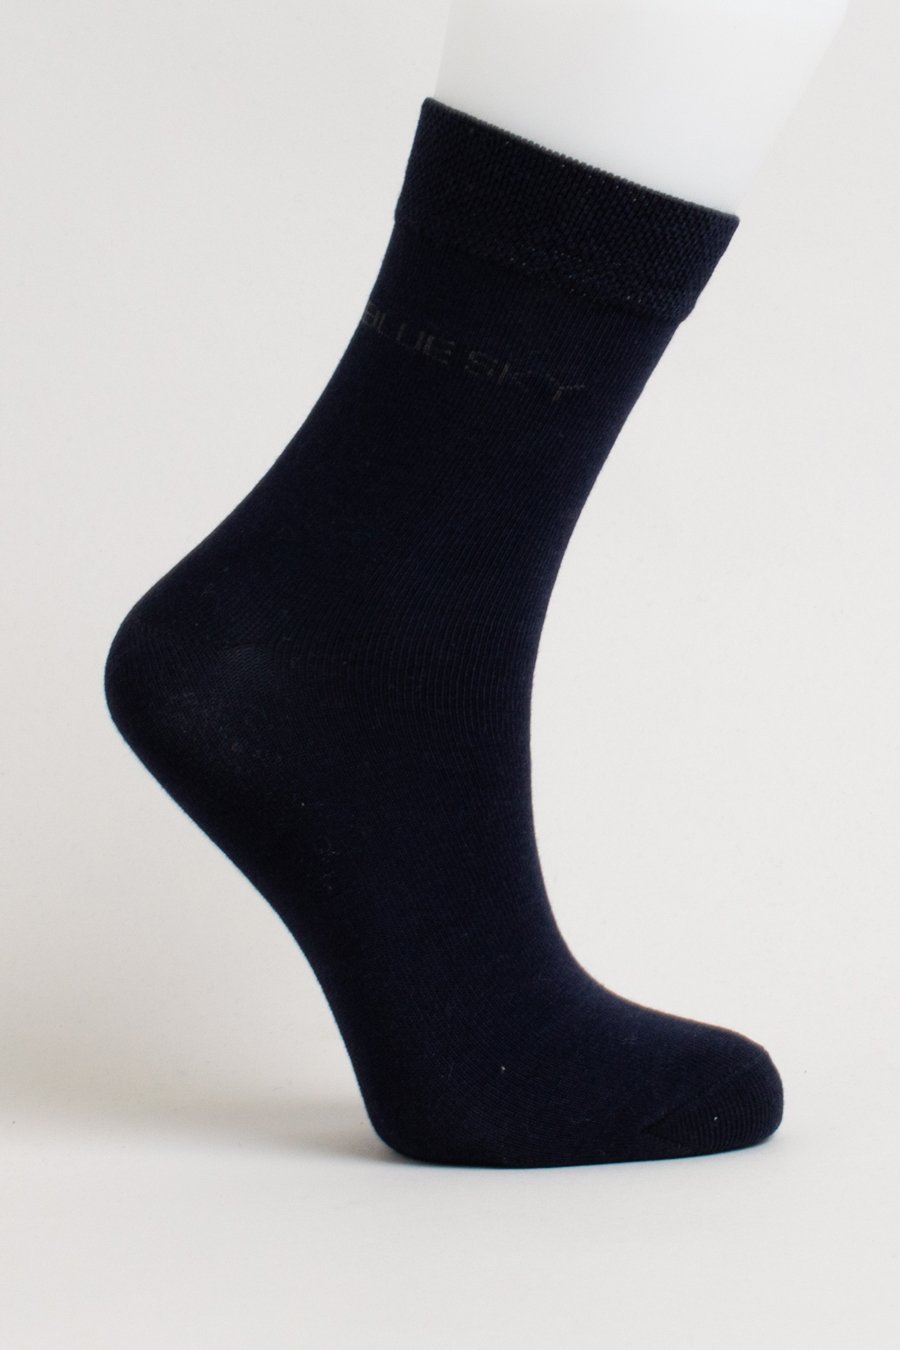 Blue Sky - Ladies Bamboo Socks Odor Reducing Socks All Things Being Eco